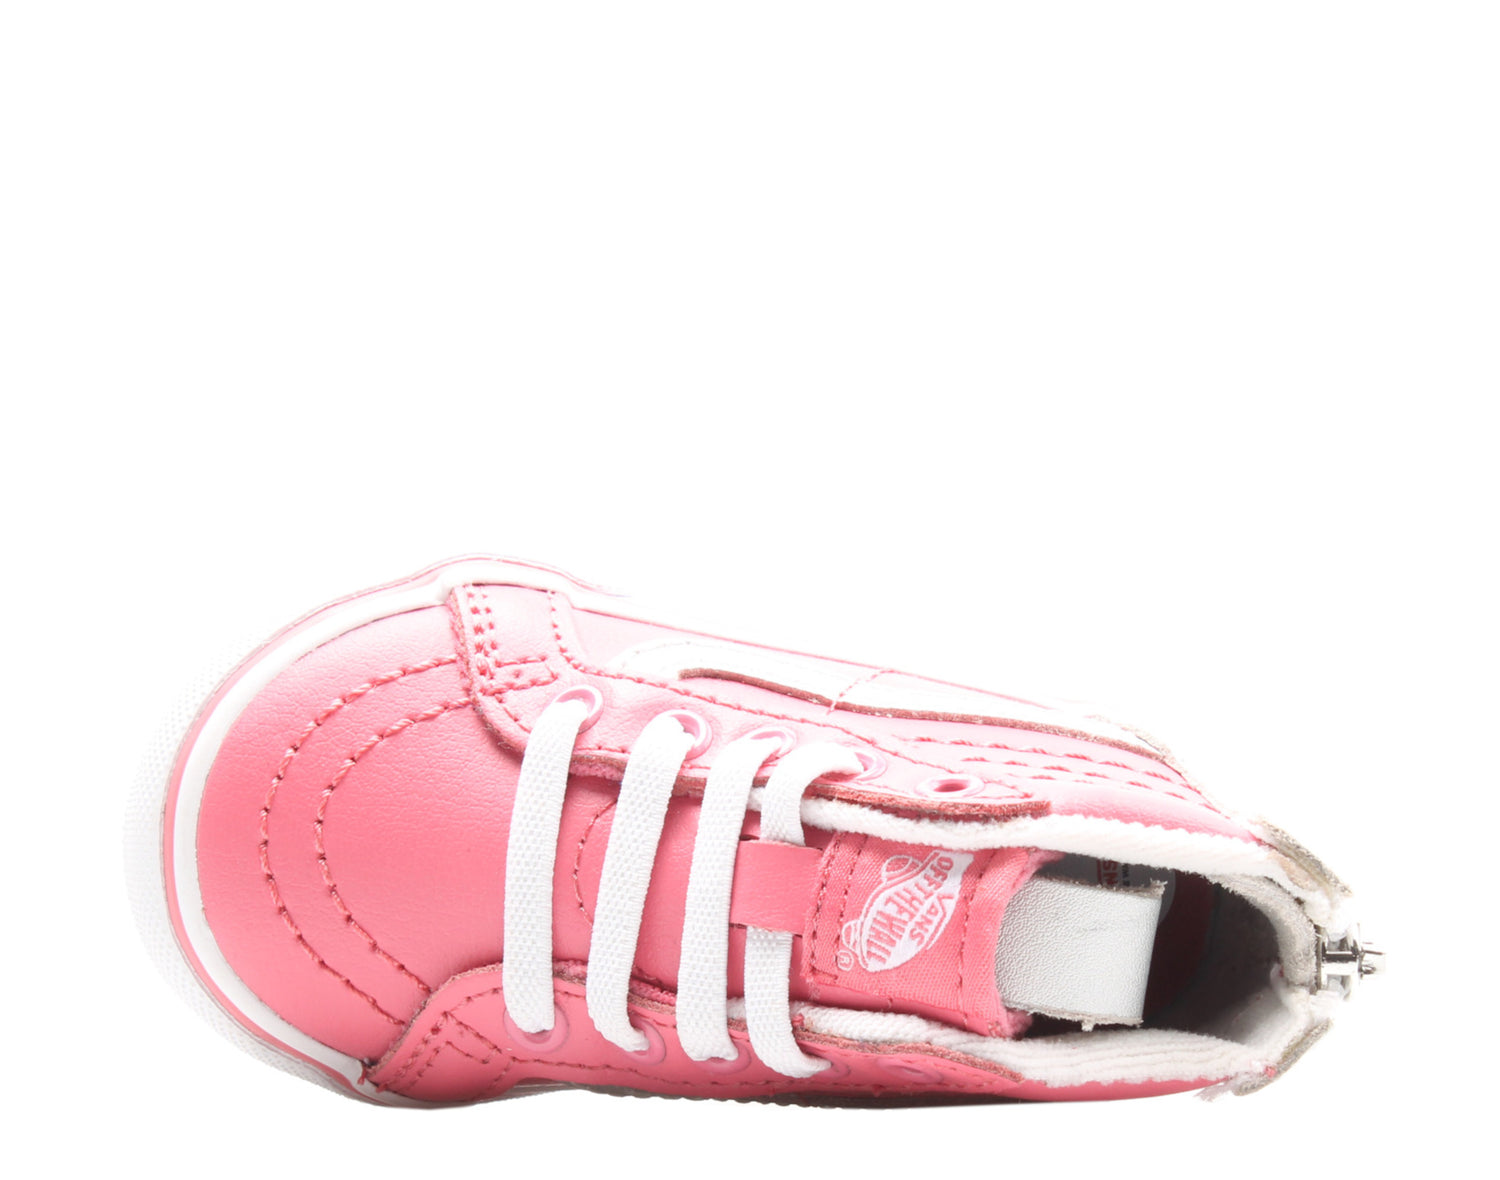 Vans Sk8-Hi Zip MTE Toddler Kids High Top Sneakers